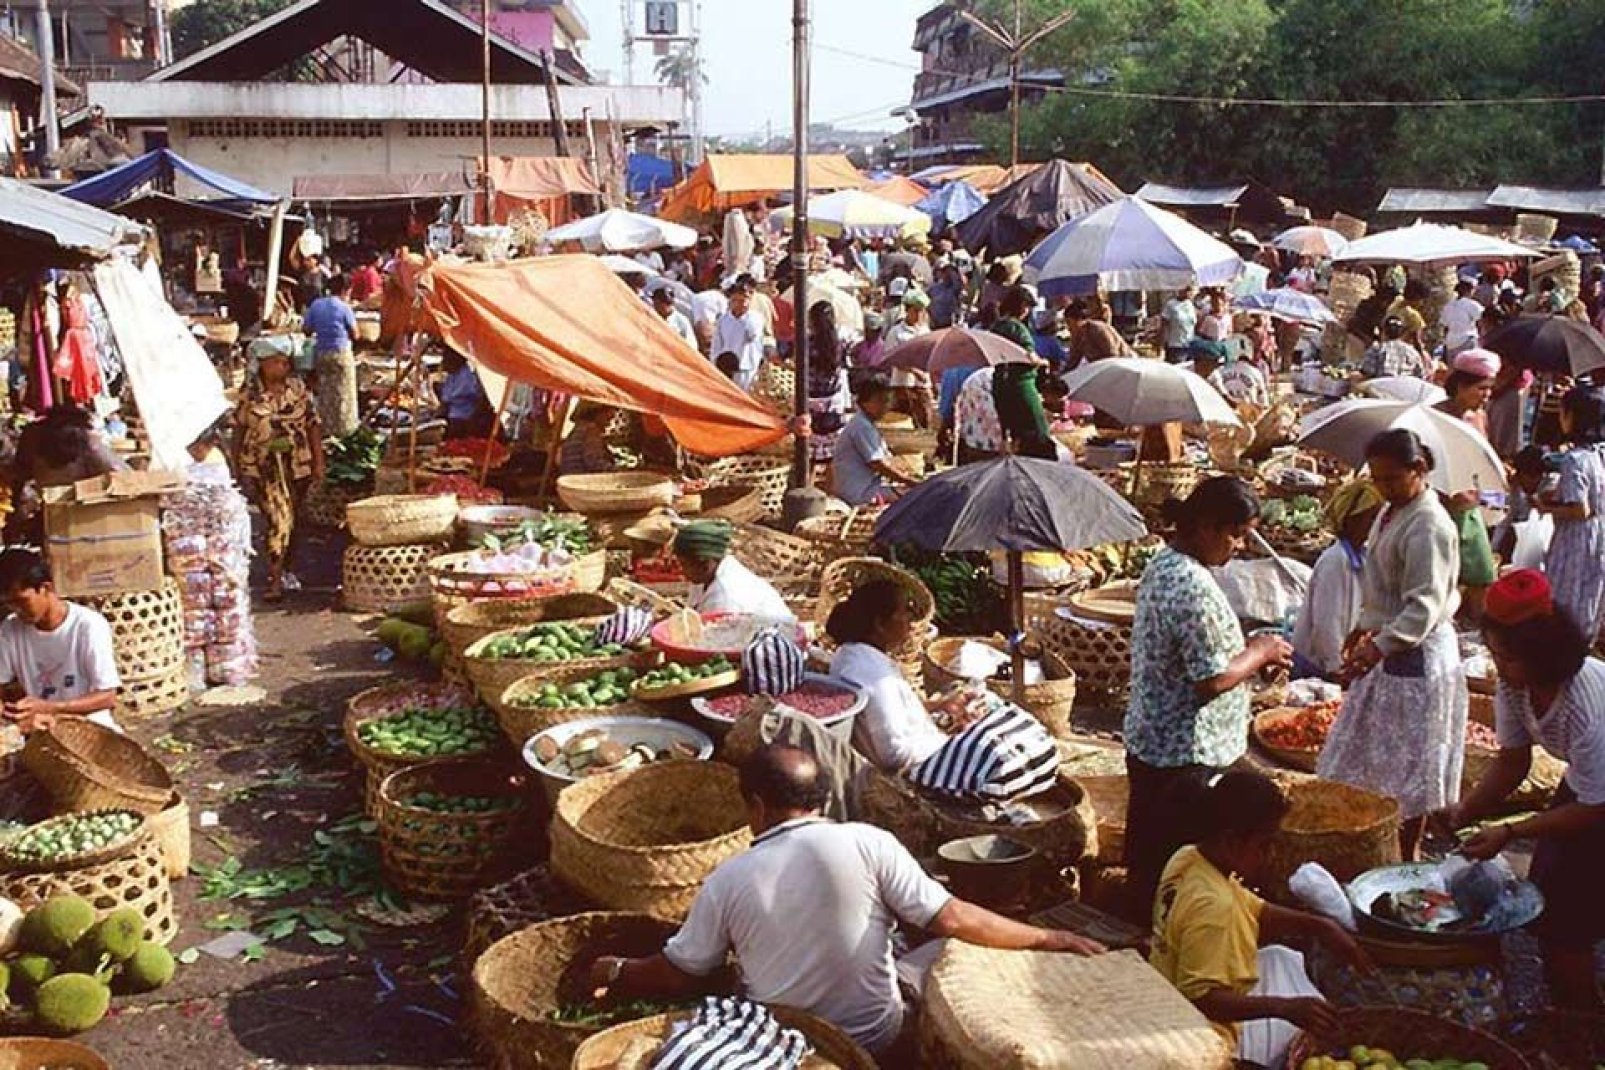 Batikbedruckte Stoffe, Korbmöbel, geschnitzte Holzgegenstände ... der Pasar ist ein wichtiger örtlicher Treffpunkt.